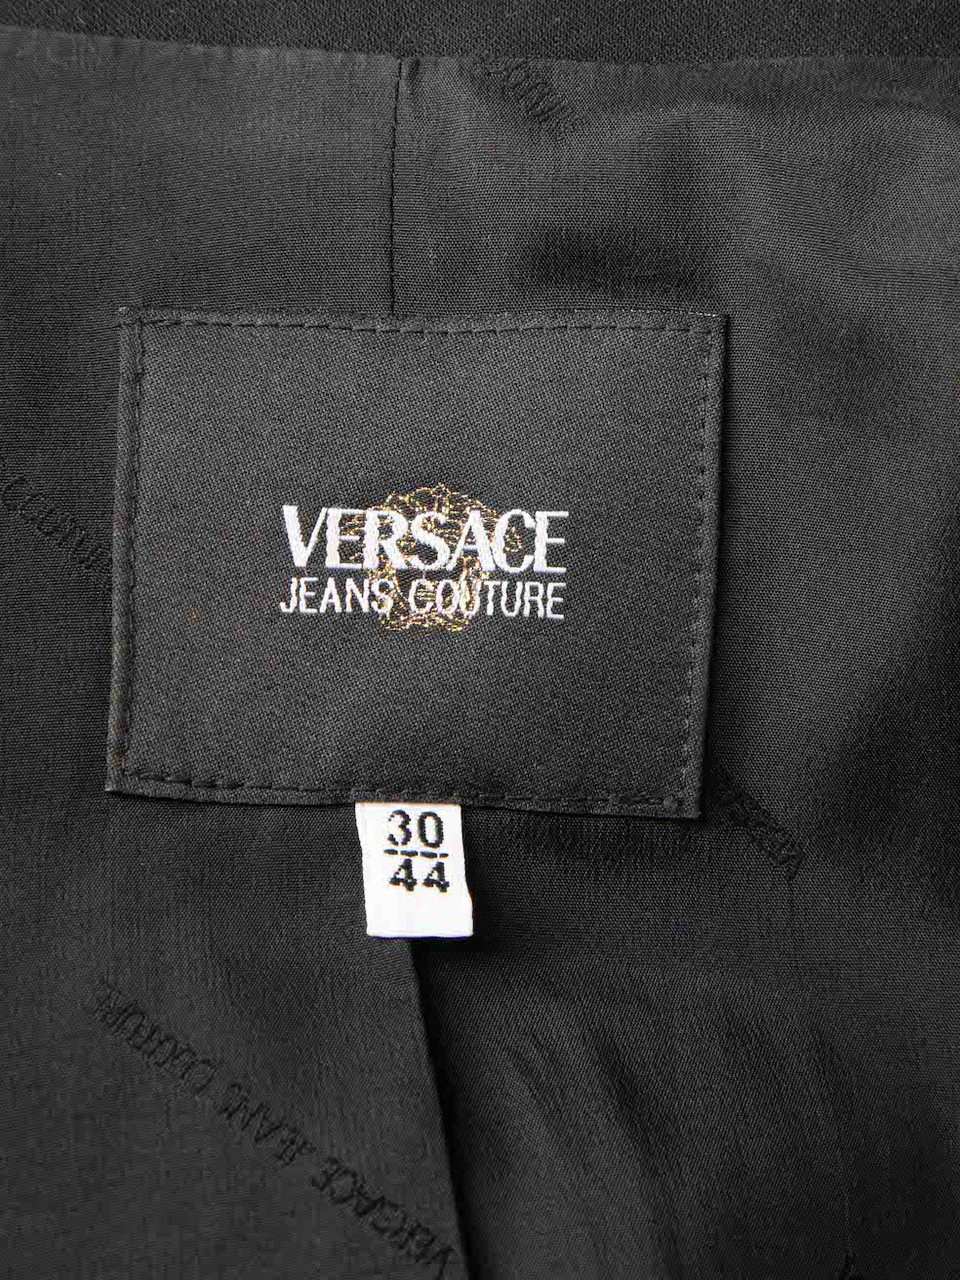 Versace Black Hidden Button Fitted Blazer Jacket